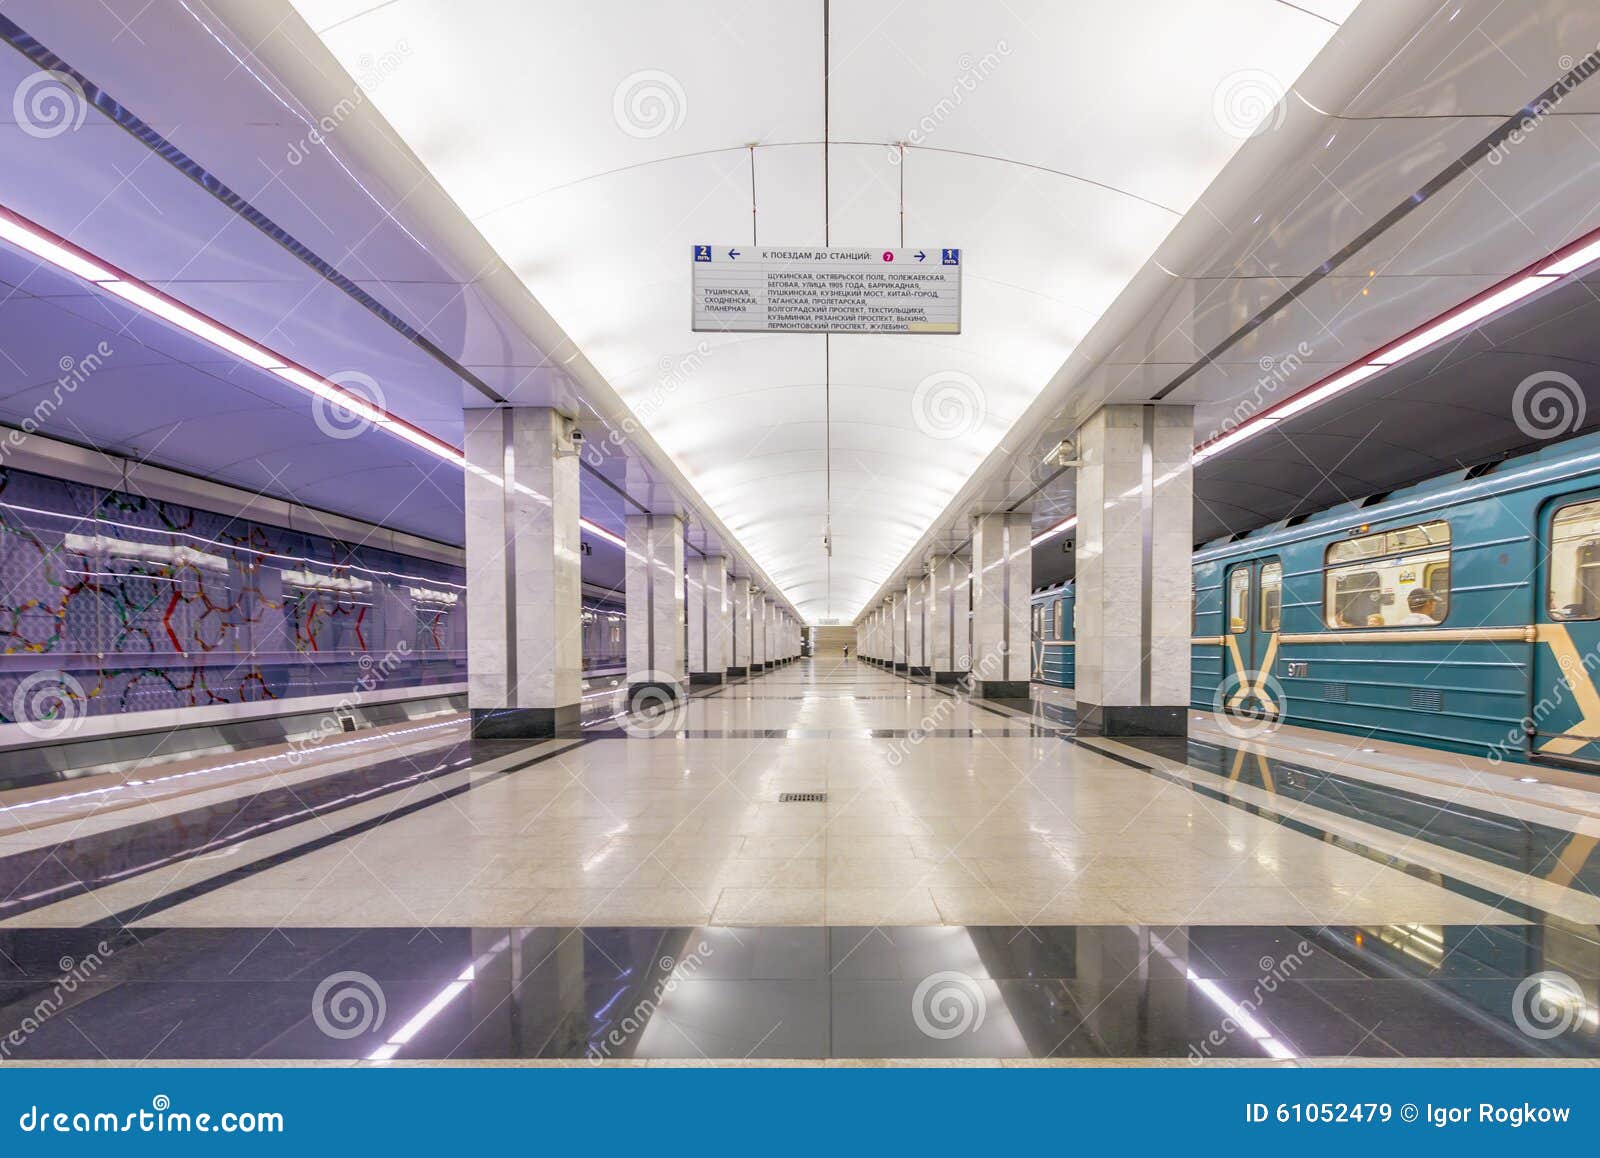 Spartak Metro Station - Moscow